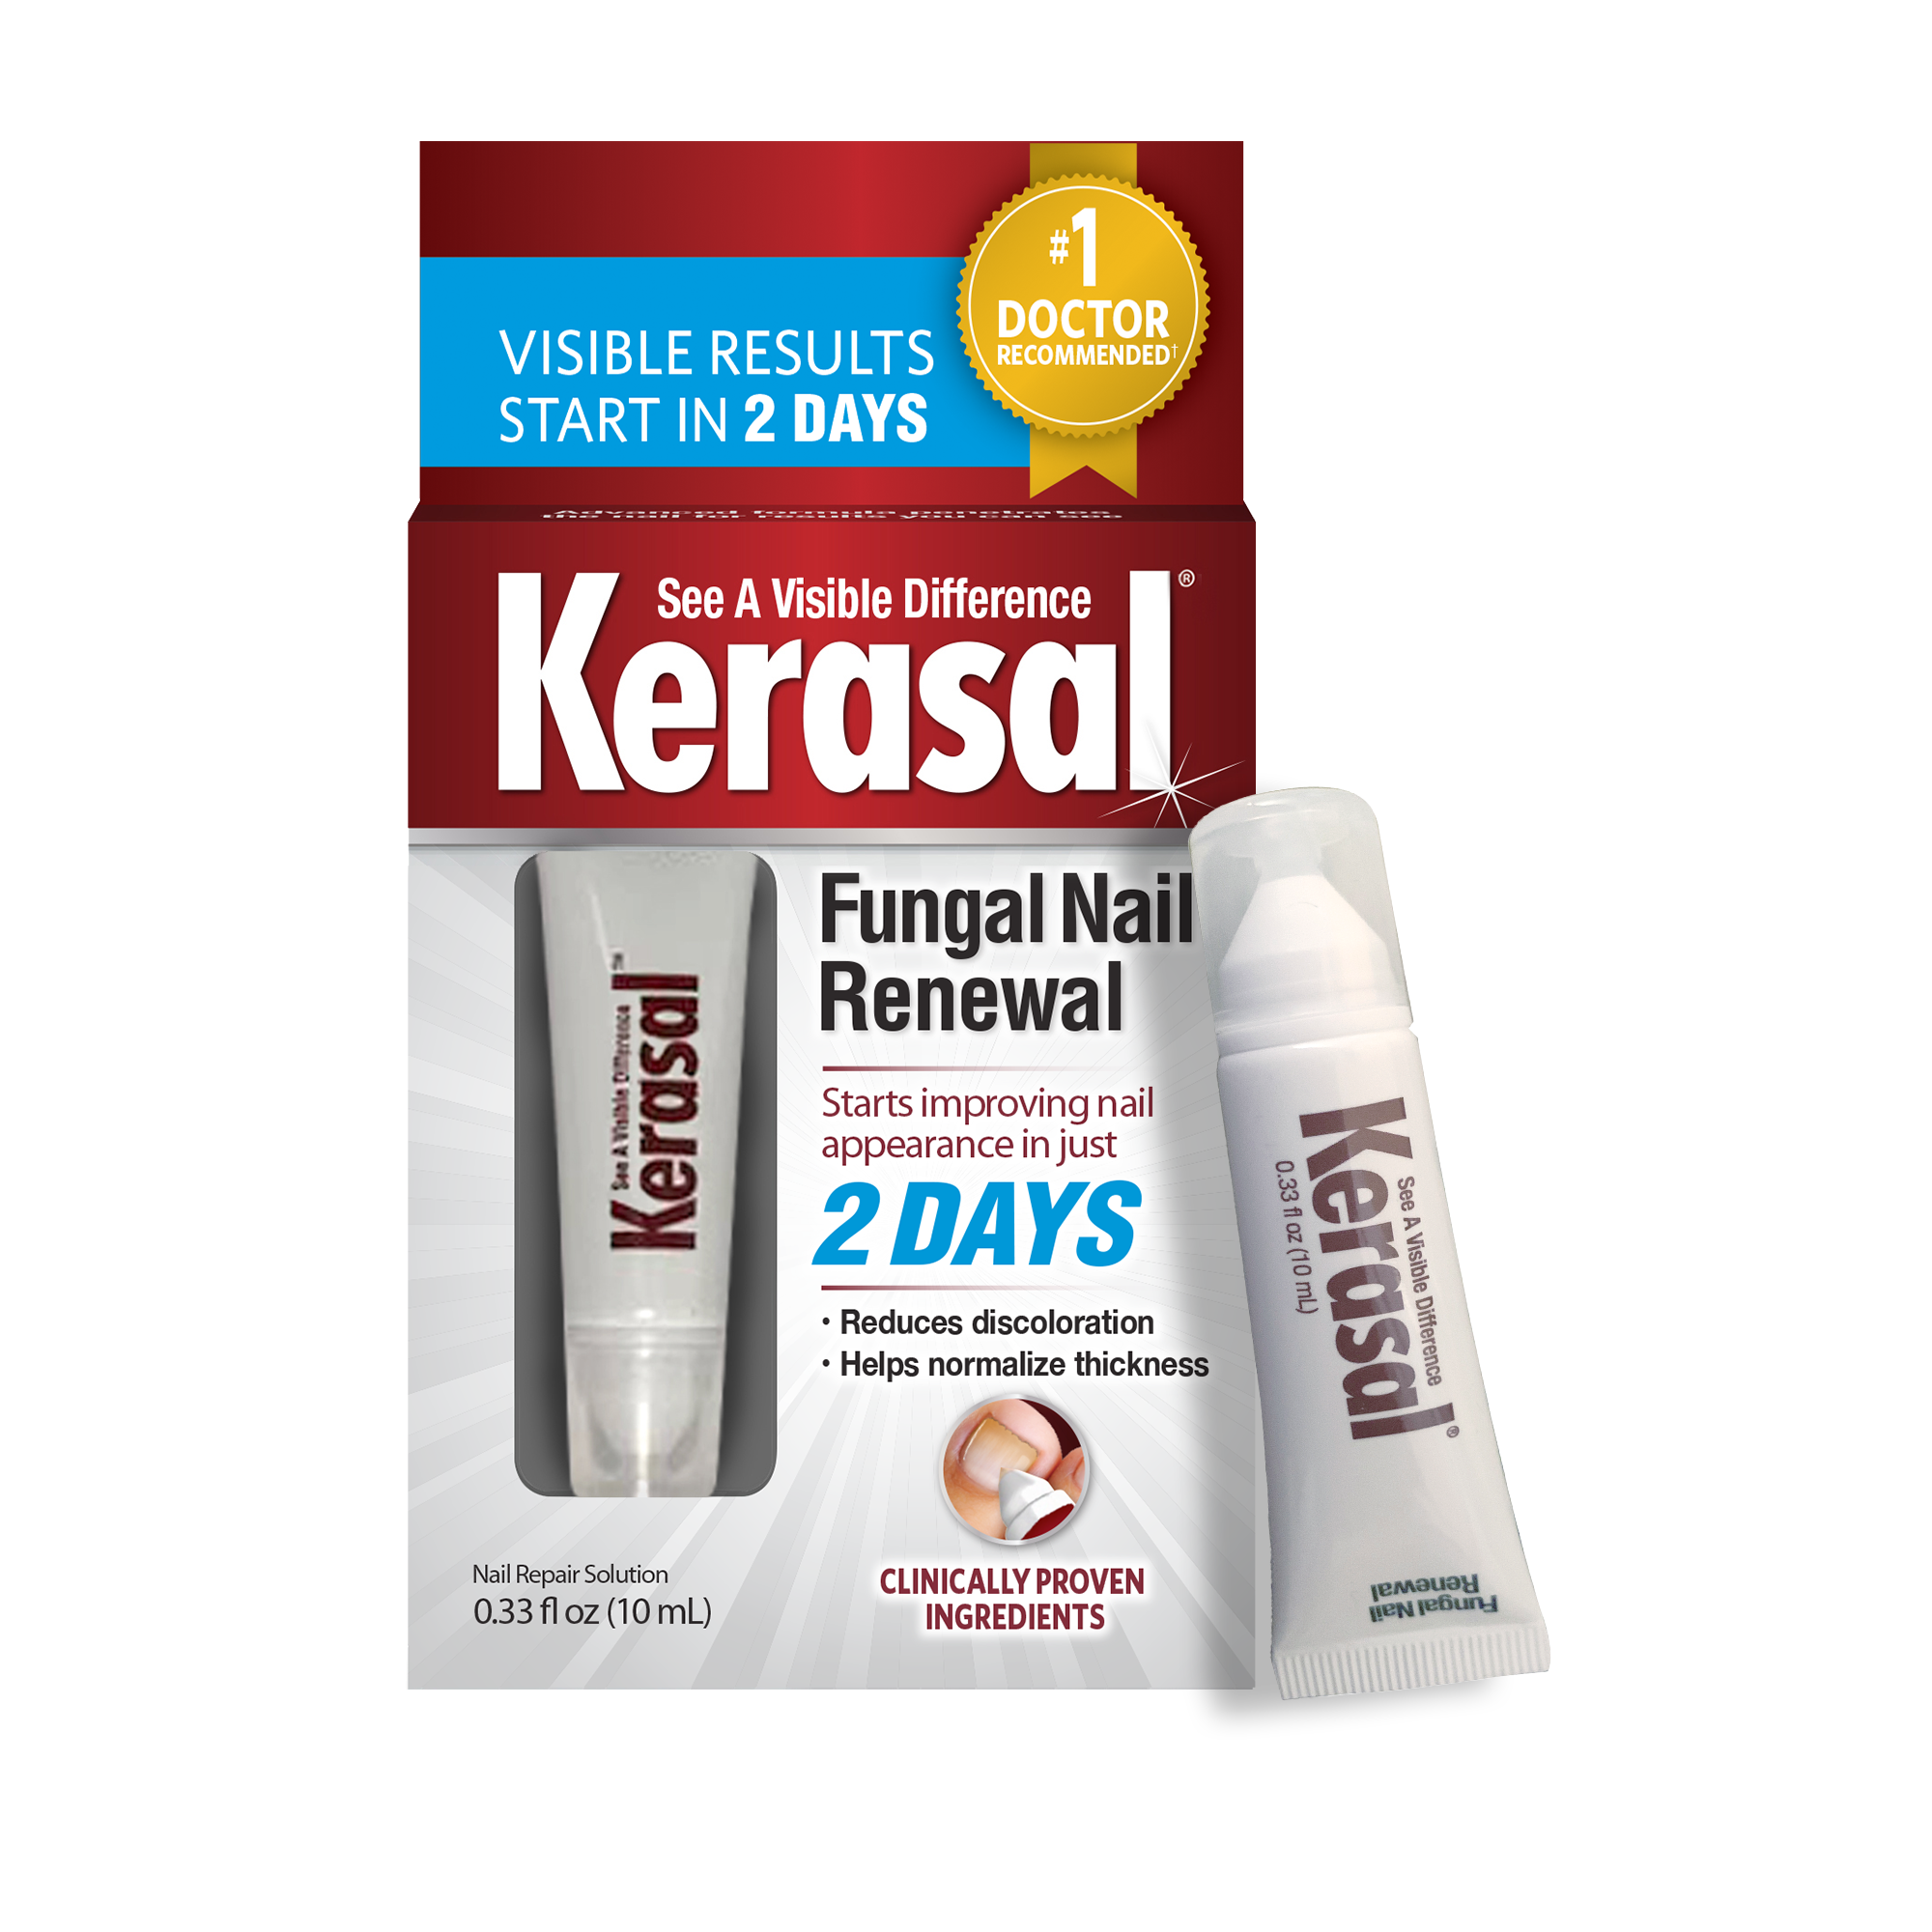 Kerasal Nail Fungal Nail Renewal Treatment for Discolored or Damaged Nails, 10ml (0.33oz) - image 1 of 10